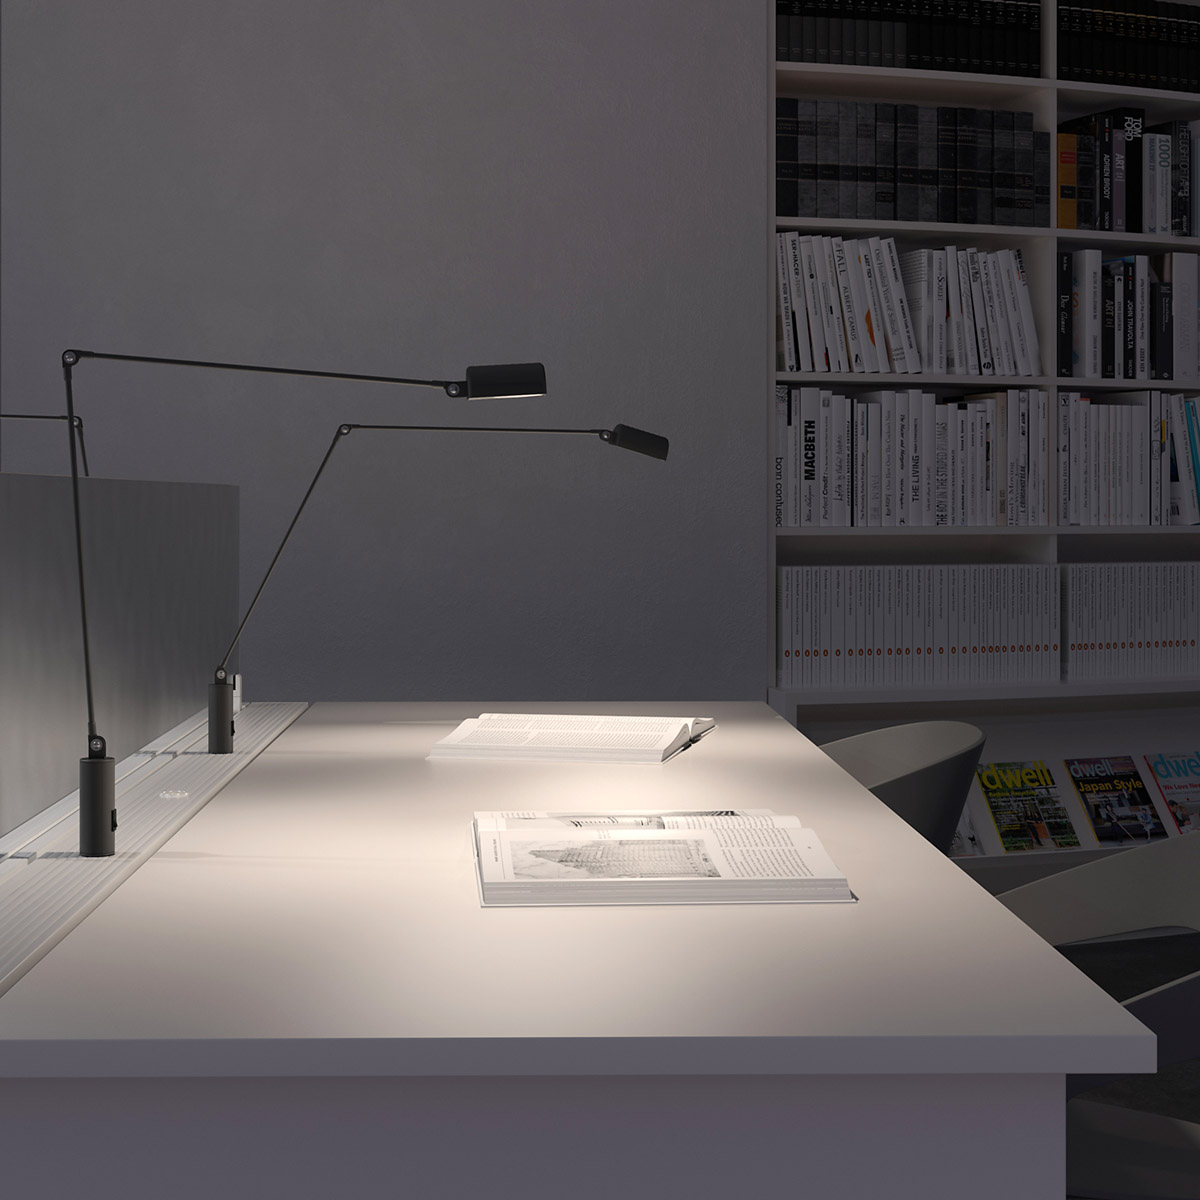 Daphine Cilindro LED Tischleuchte, H: 49 cm, Weiß matt, Warmweiß 3000K